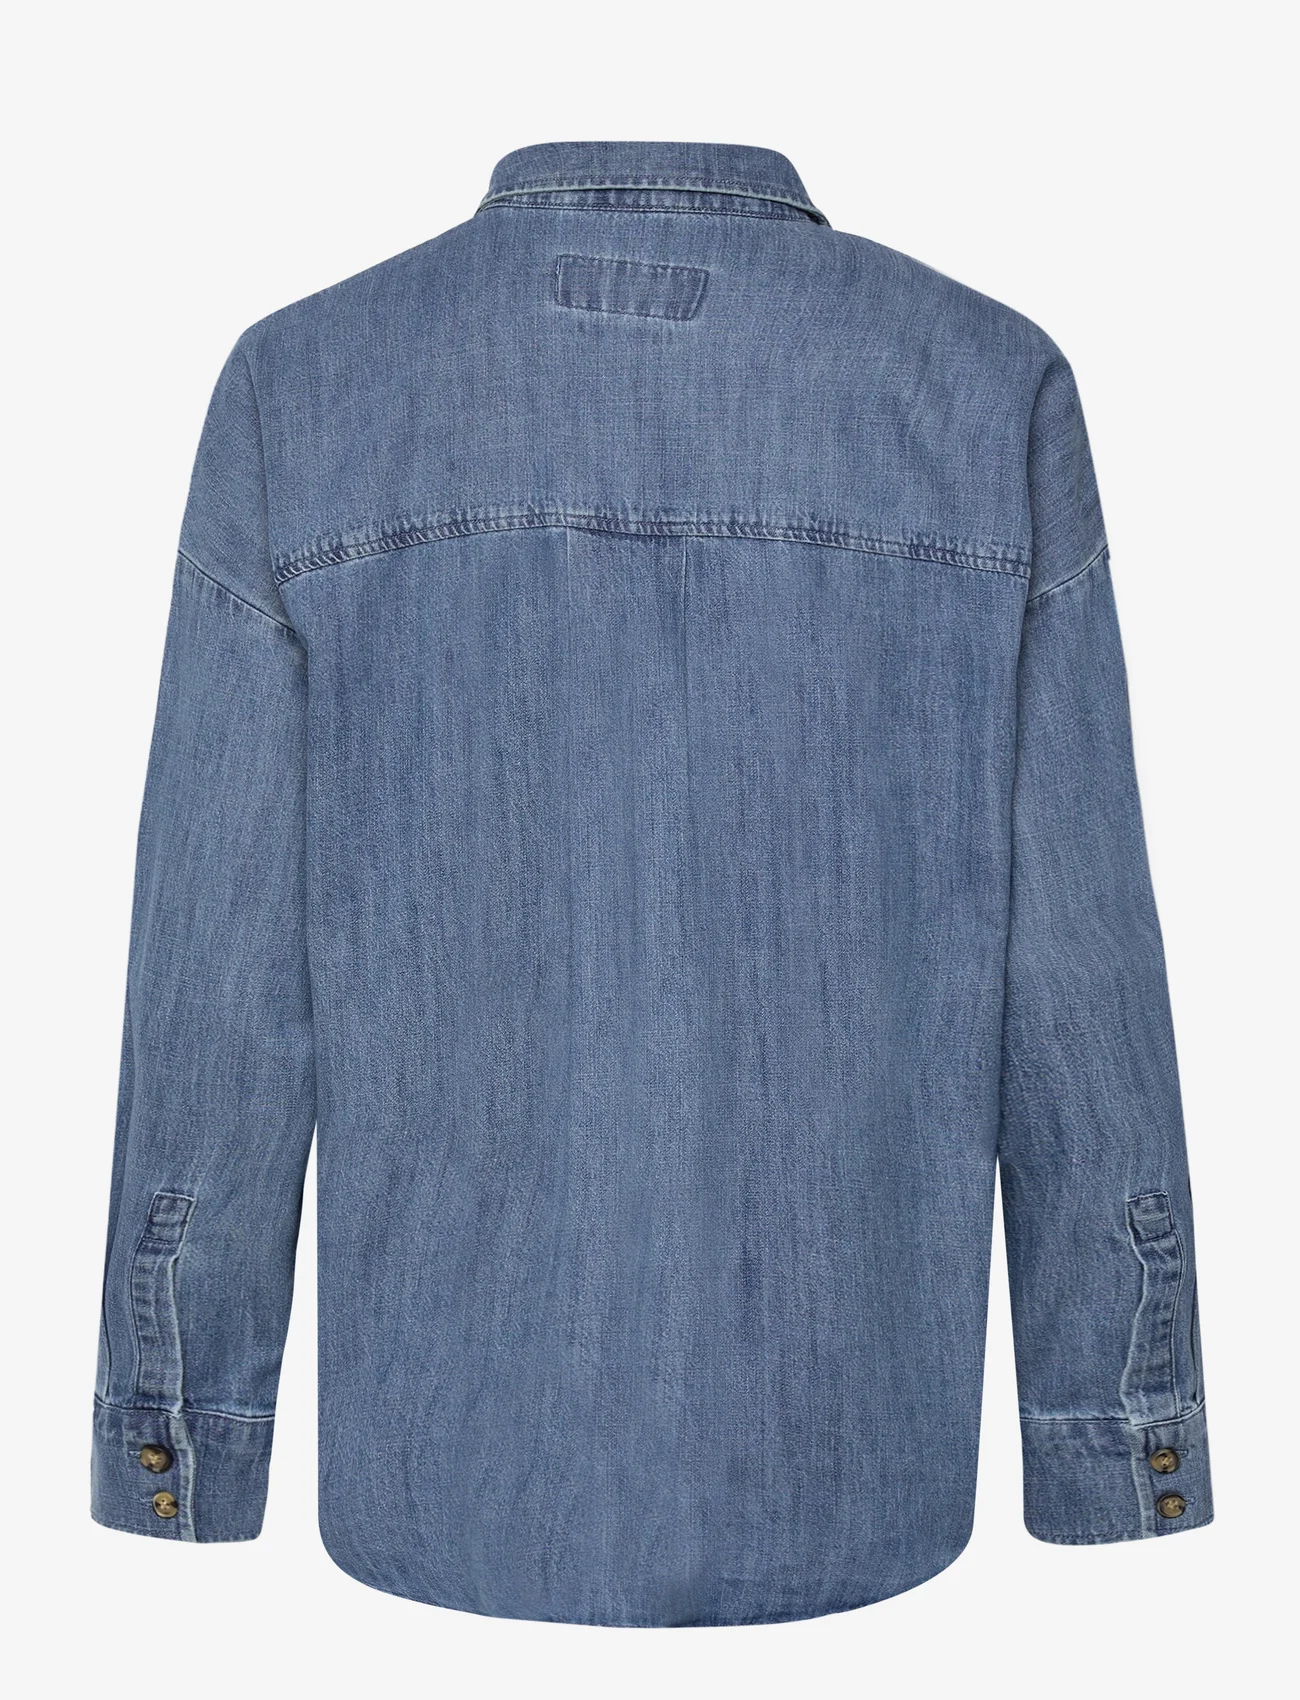 Esprit Casual - Women Blouses woven long sleeve - jeanshemden - blue medium wash - 1